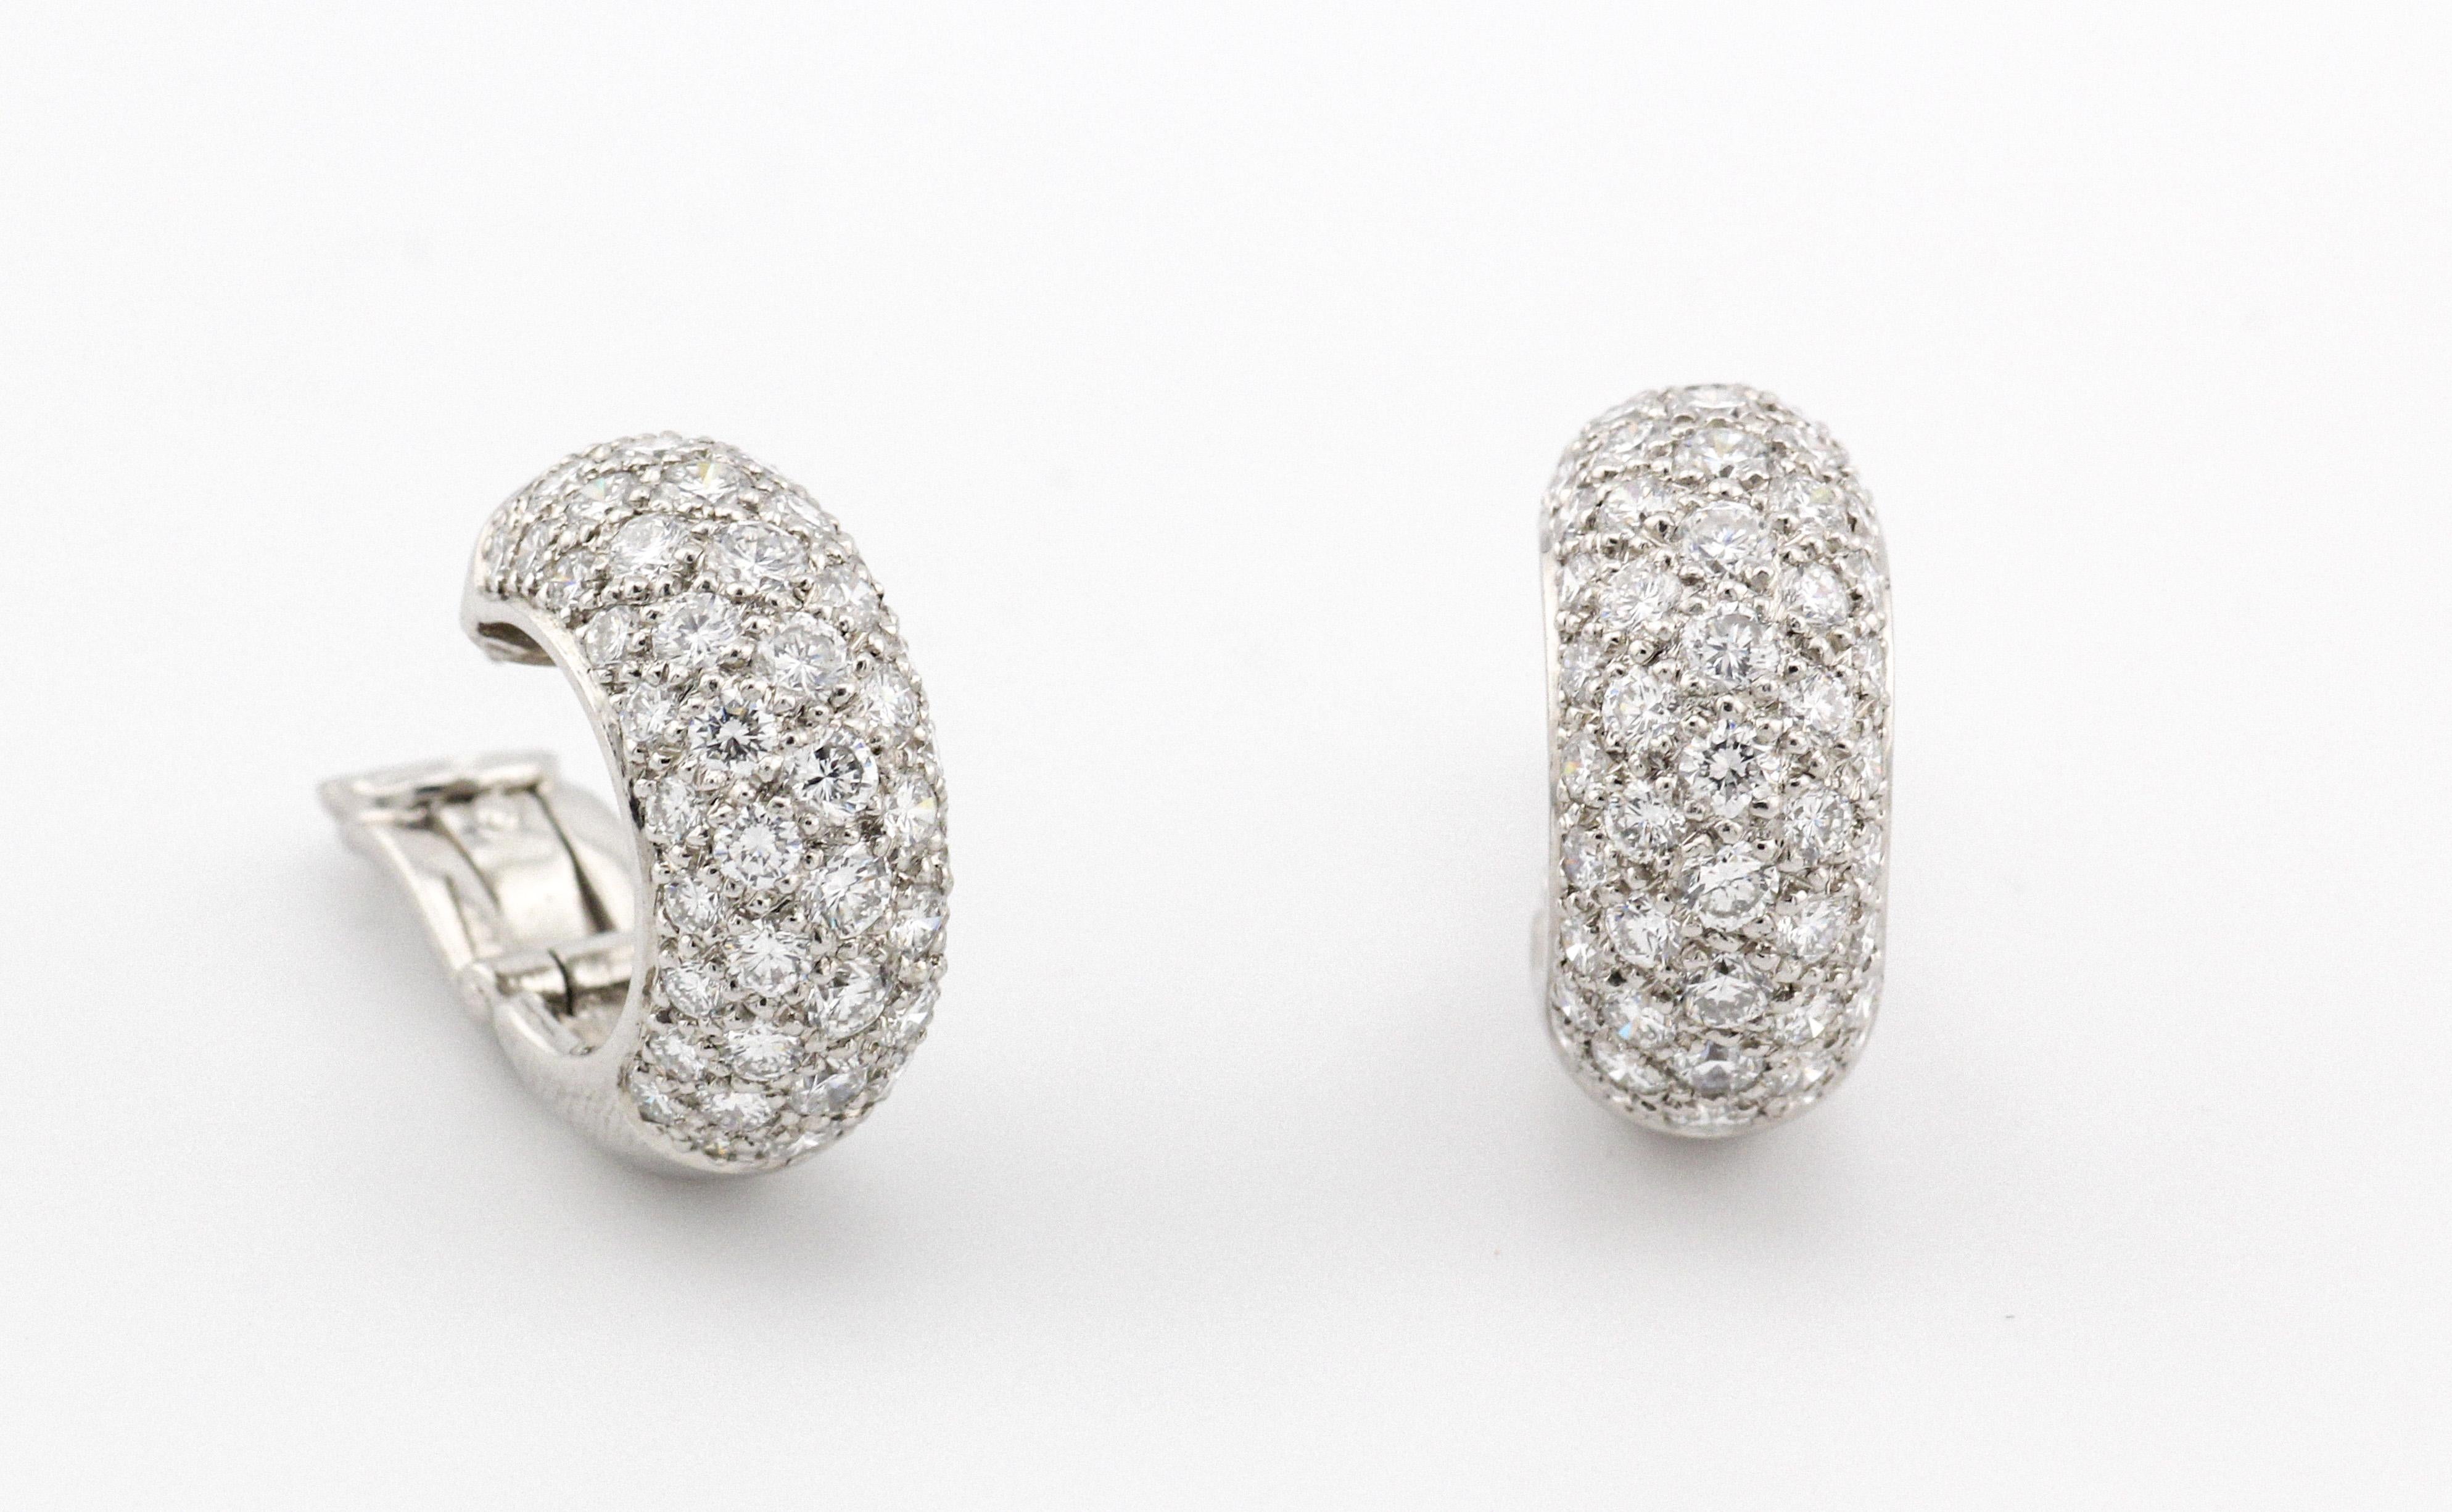 Voici l'incarnation de l'élégance et de la sophistication - la collection Tiffany & Co. Boucles d'oreilles Etoile à 5 rangs de diamants en platine. Méticuleusement fabriquées par la marque de luxe emblématique, ces boucles d'oreilles redéfinissent